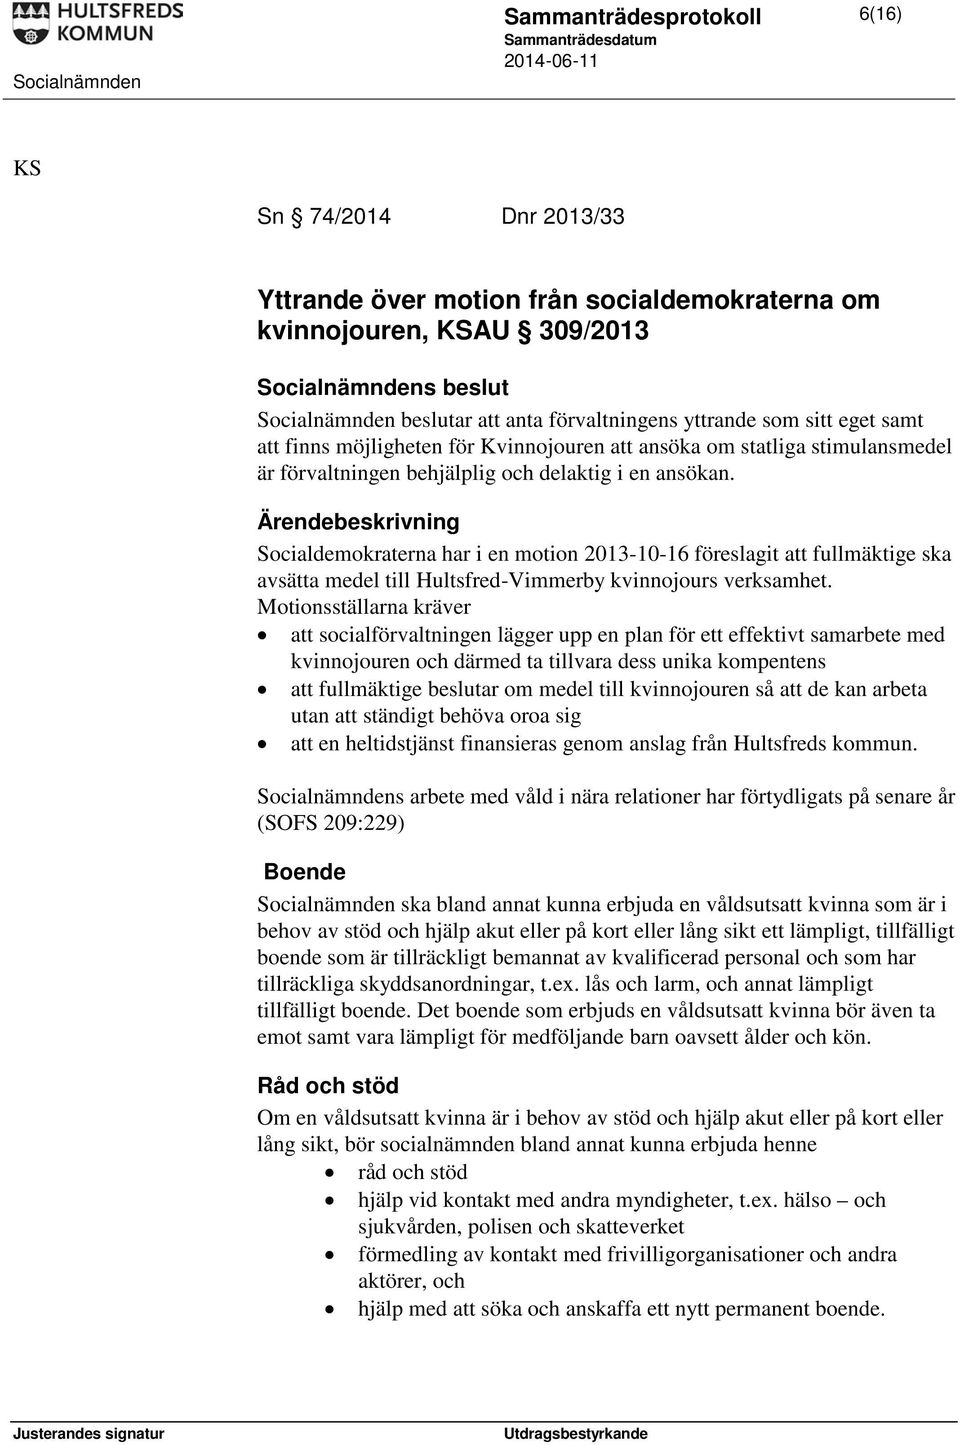 Socialdemokraterna har i en motion 2013-10-16 föreslagit att fullmäktige ska avsätta medel till Hultsfred-Vimmerby kvinnojours verksamhet.